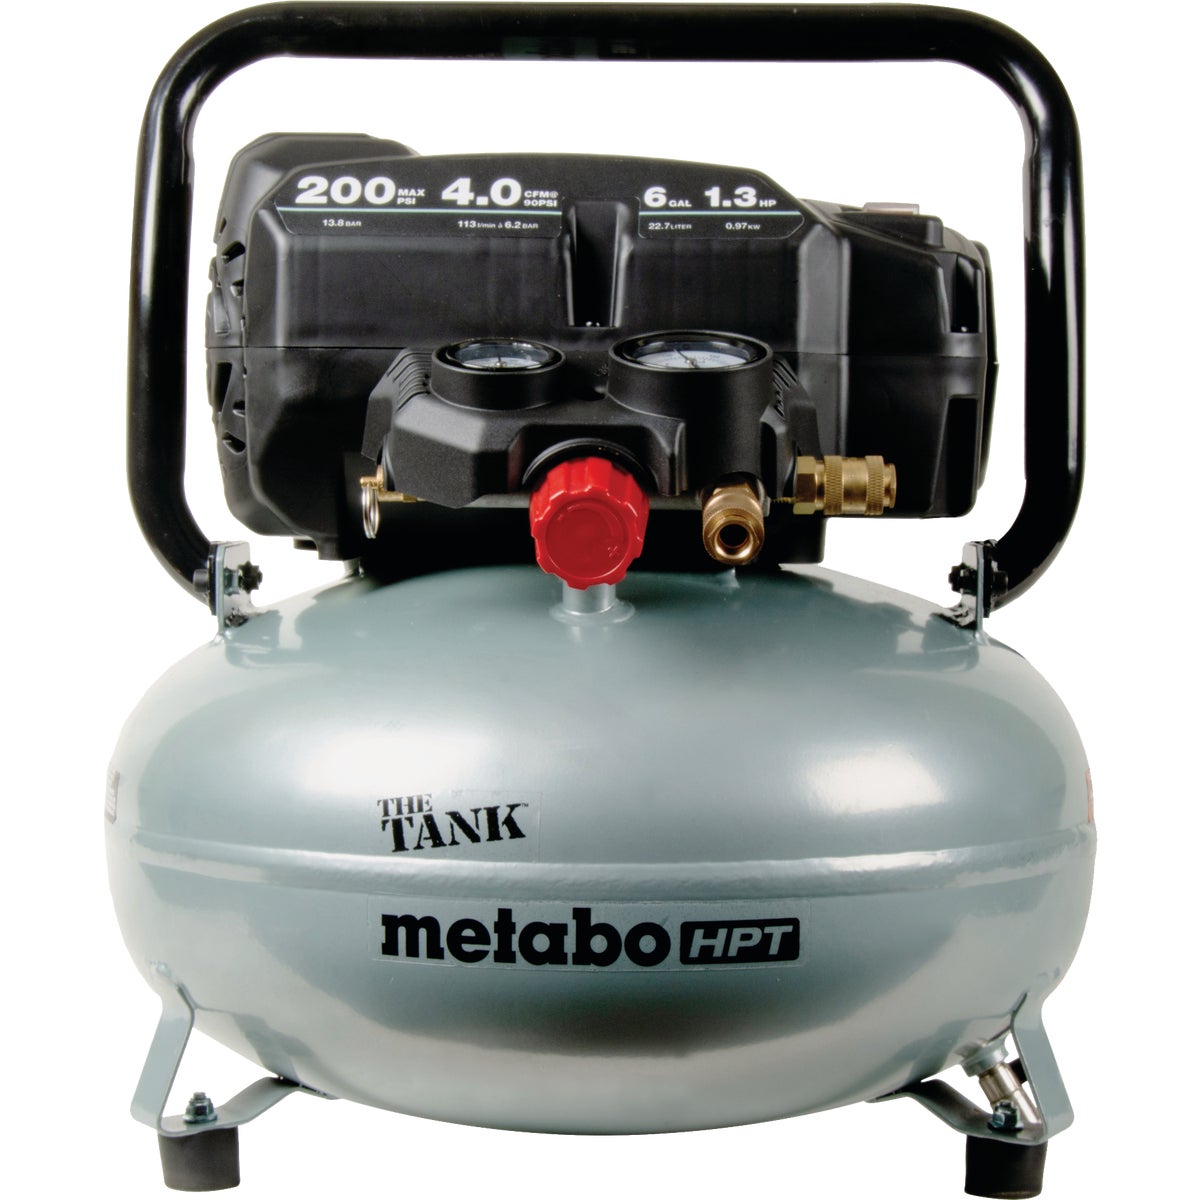 Metabo HPT The Tank 6 Gal. 200 psi Pancake Air Compressor